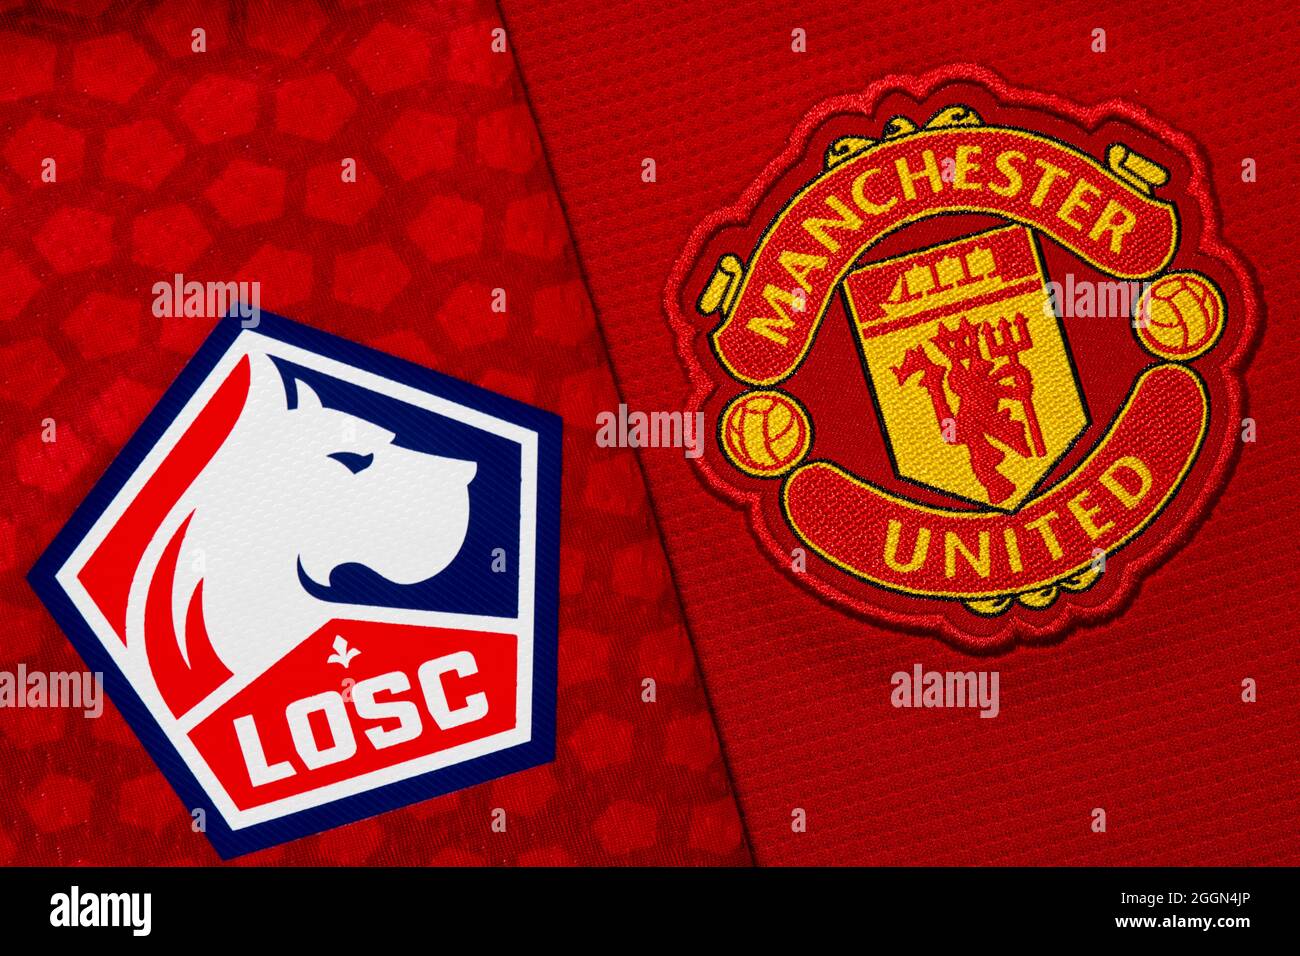 Nahaufnahme des Vereinswappens von Manchester United und Lille OSC. Stockfoto